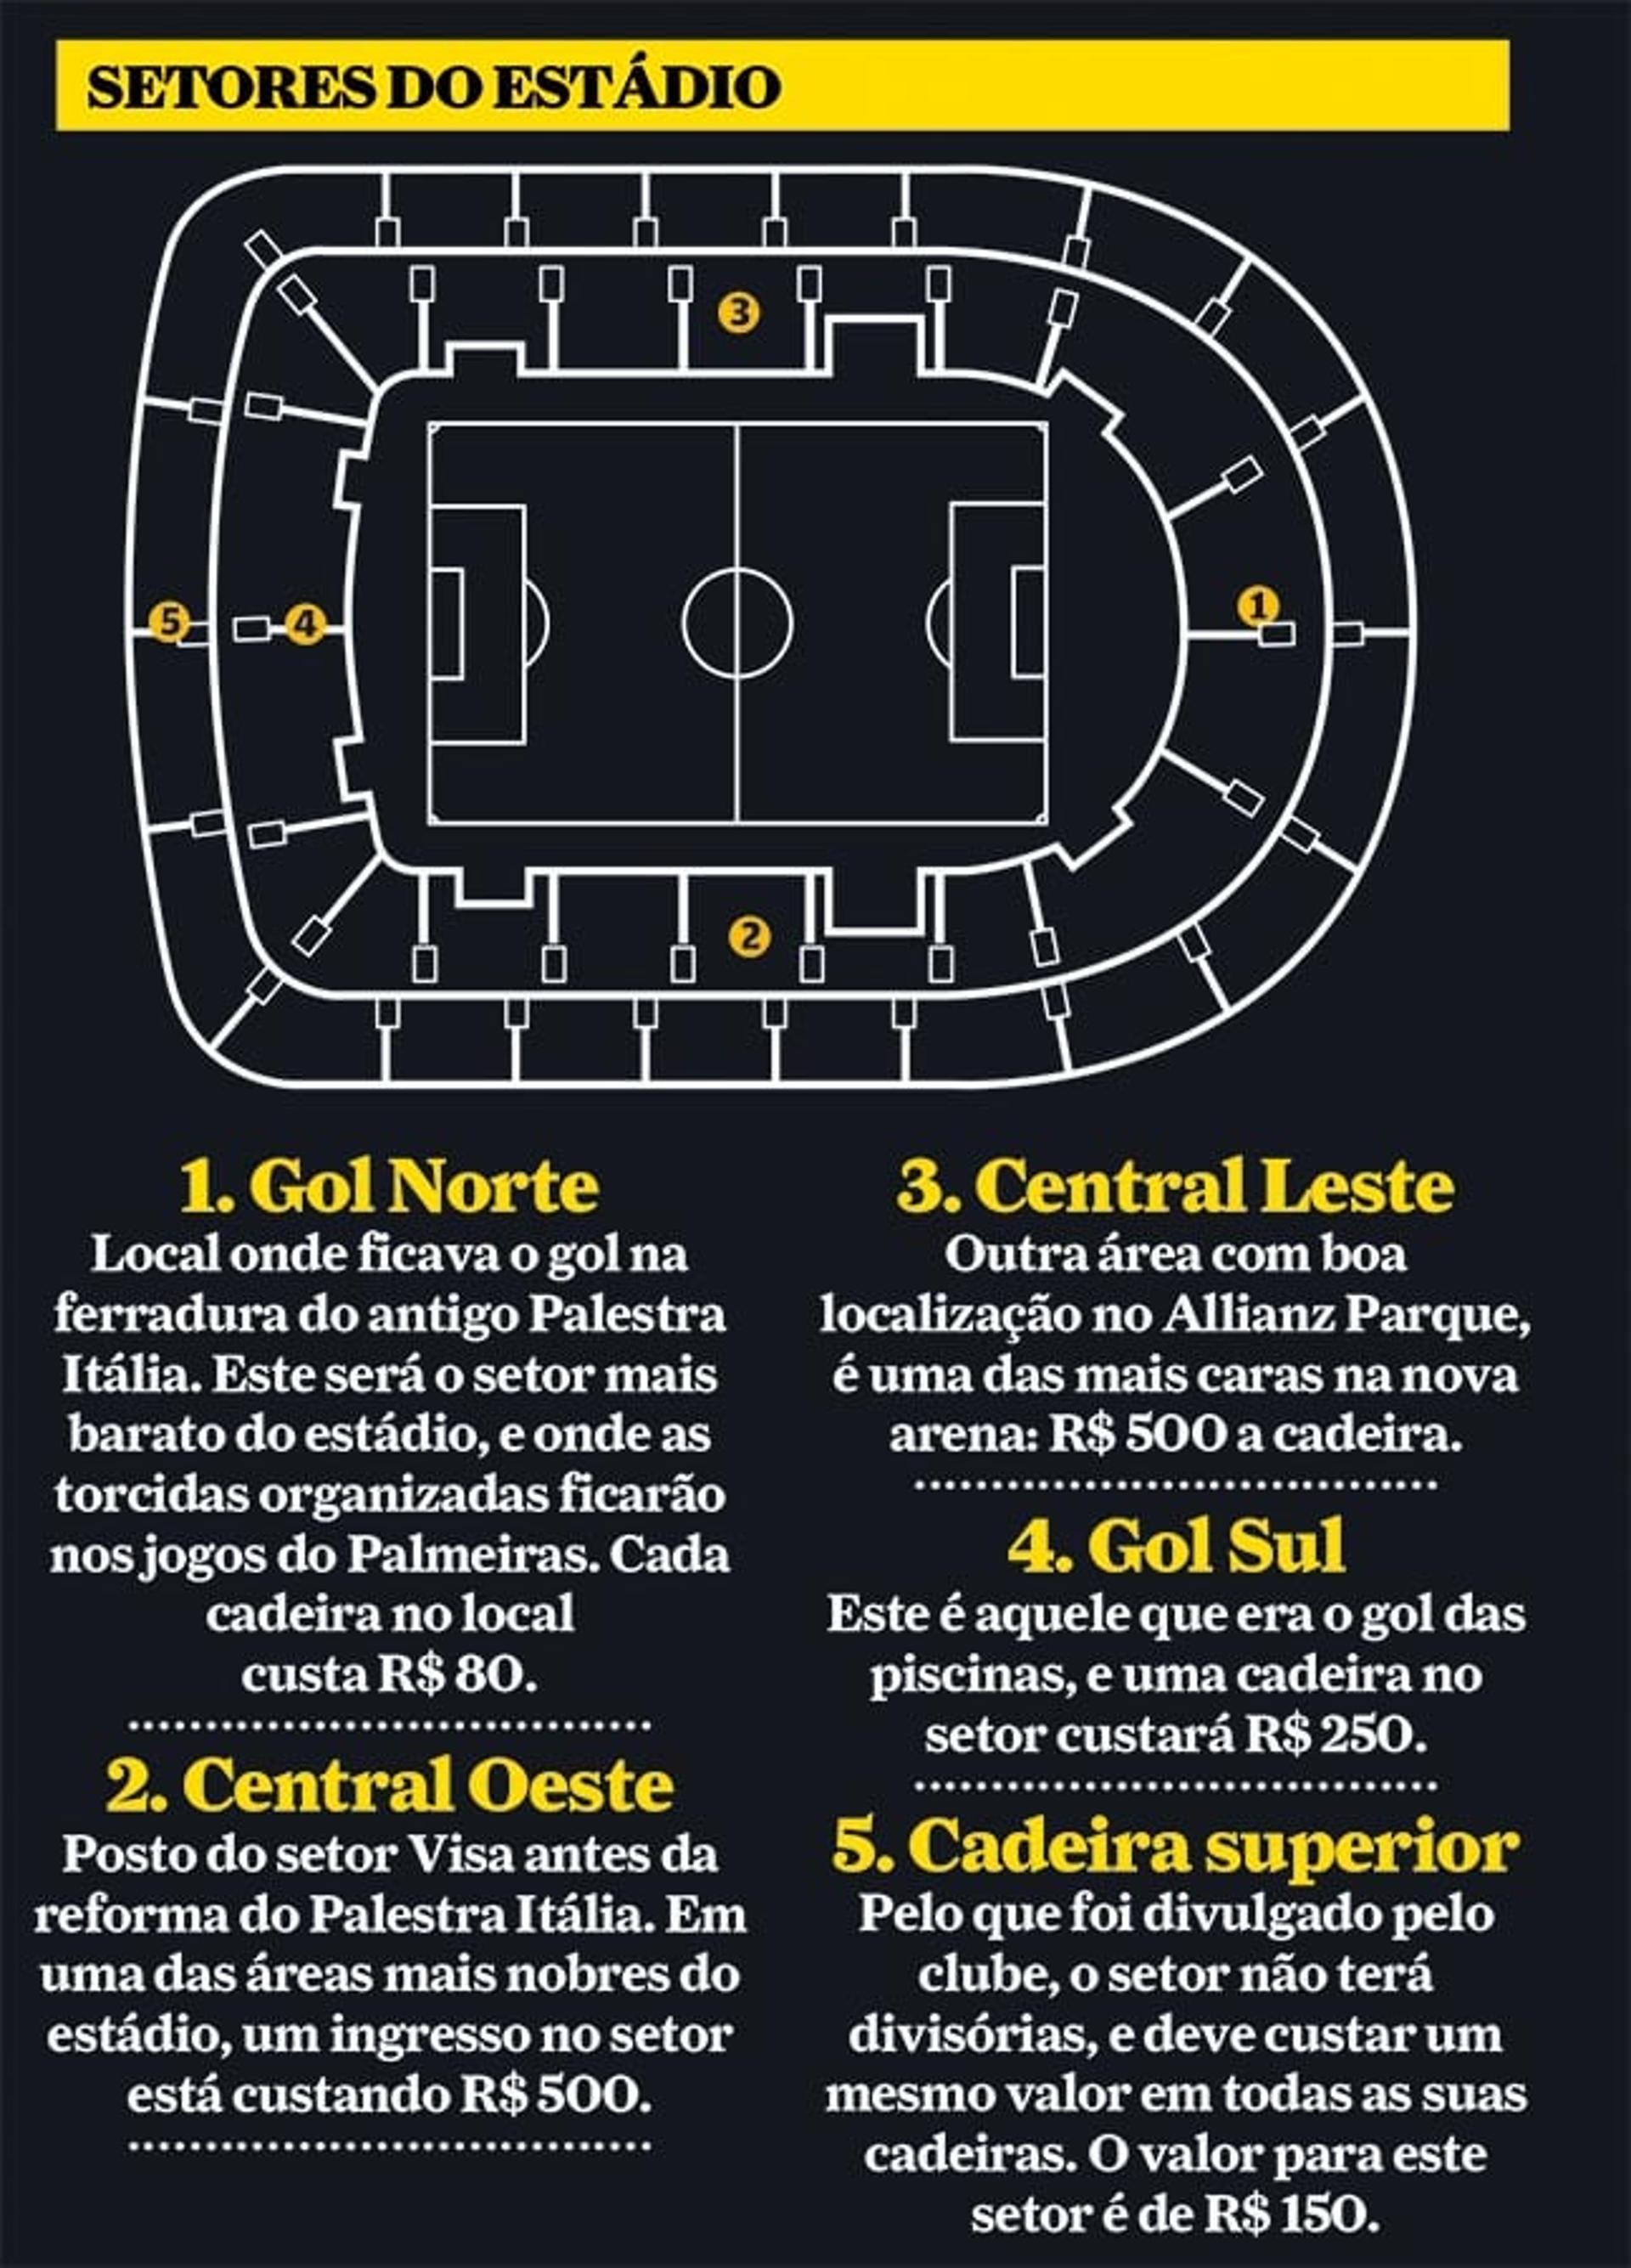 Memória sobre setores do estádio do Palmeiras, Allianz Parque (Foto: Reprodução)